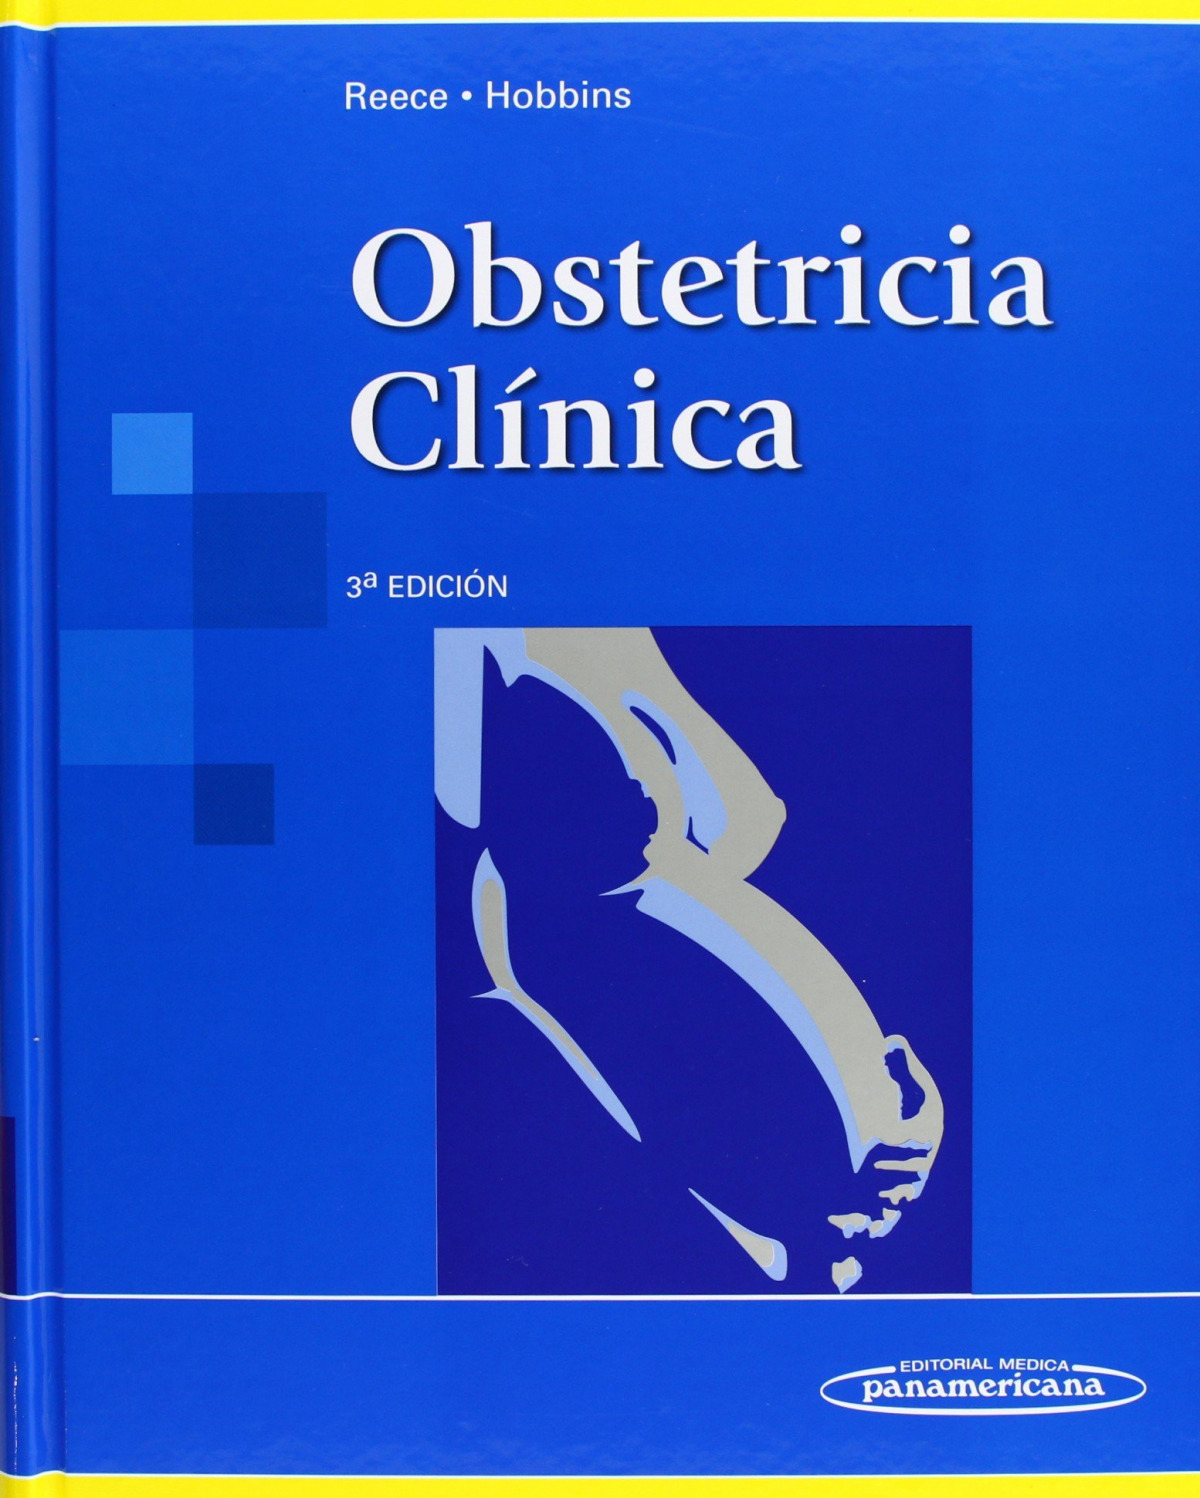 Obstetricia clínica 